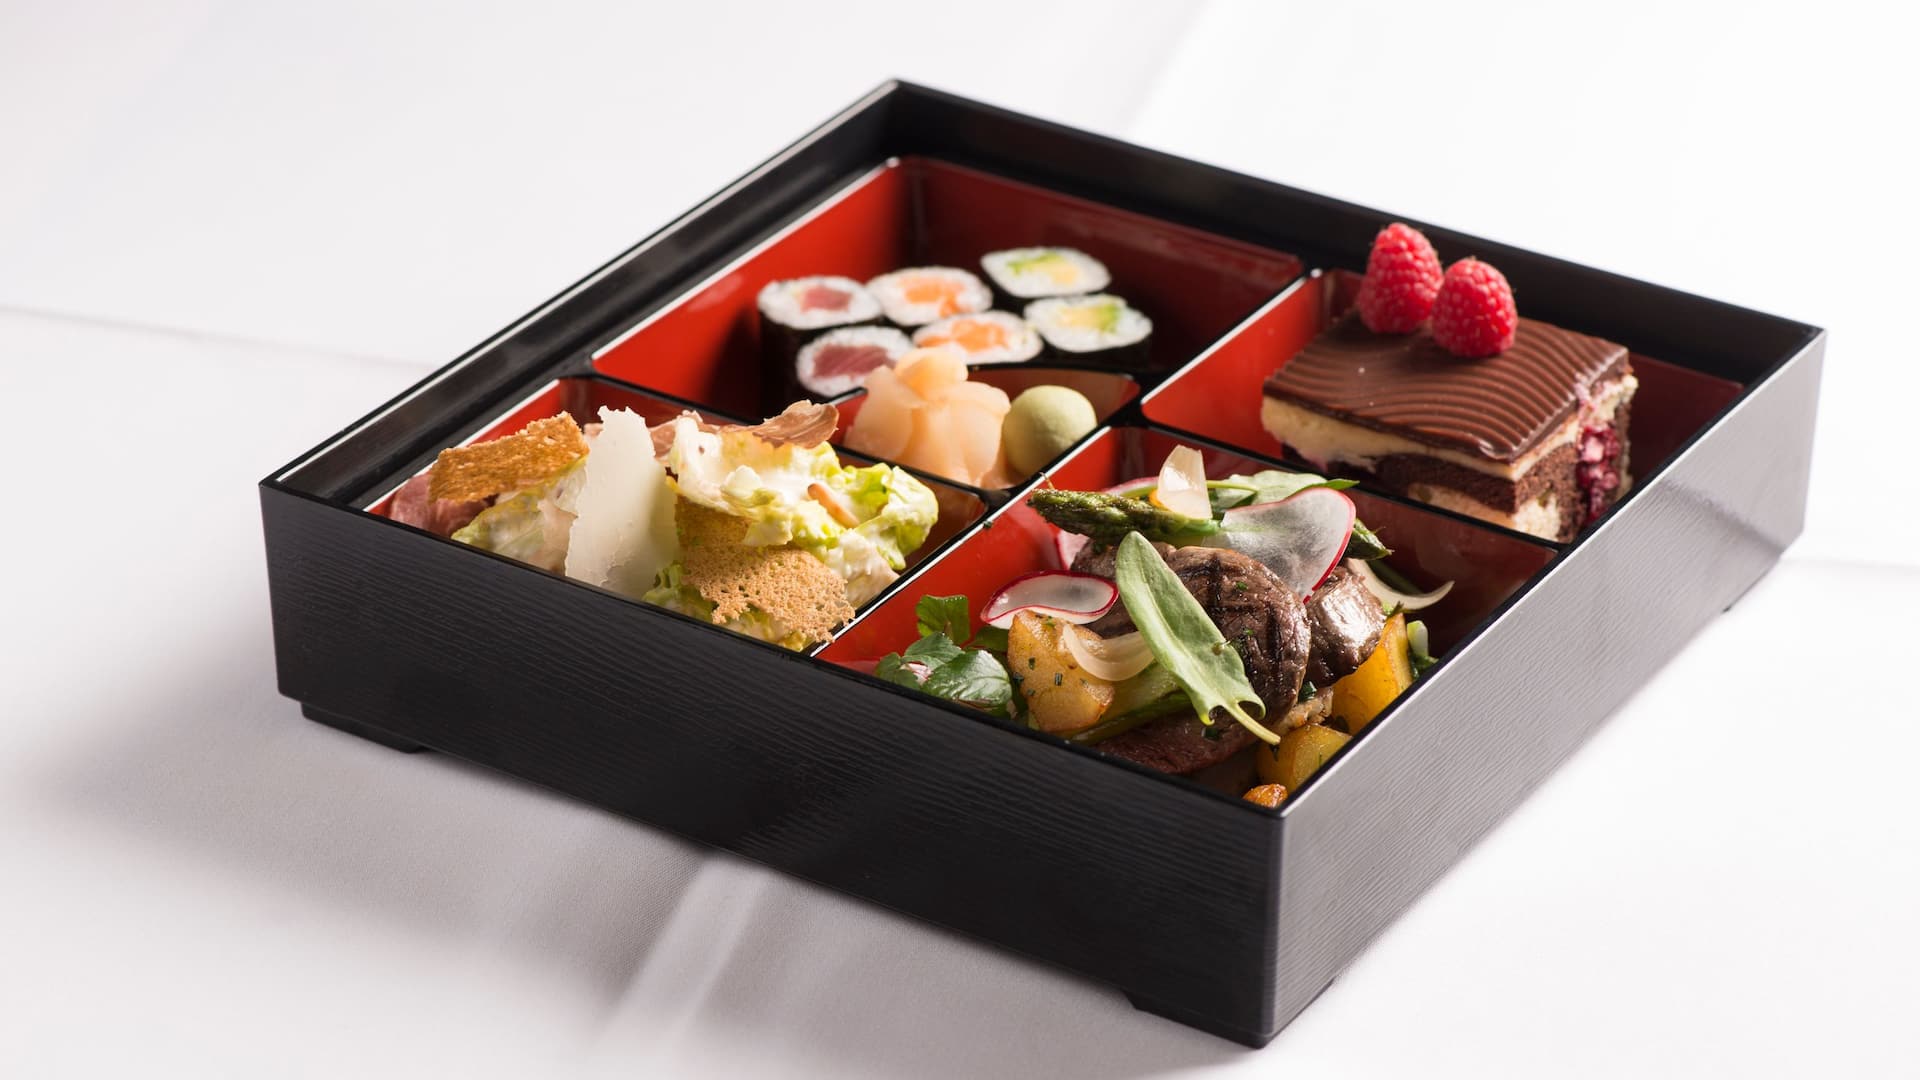 Gefüllte Bento Box mit Sushi, Cesar Salad, Fleisch und Gemüse sowie Schokoküchlein 